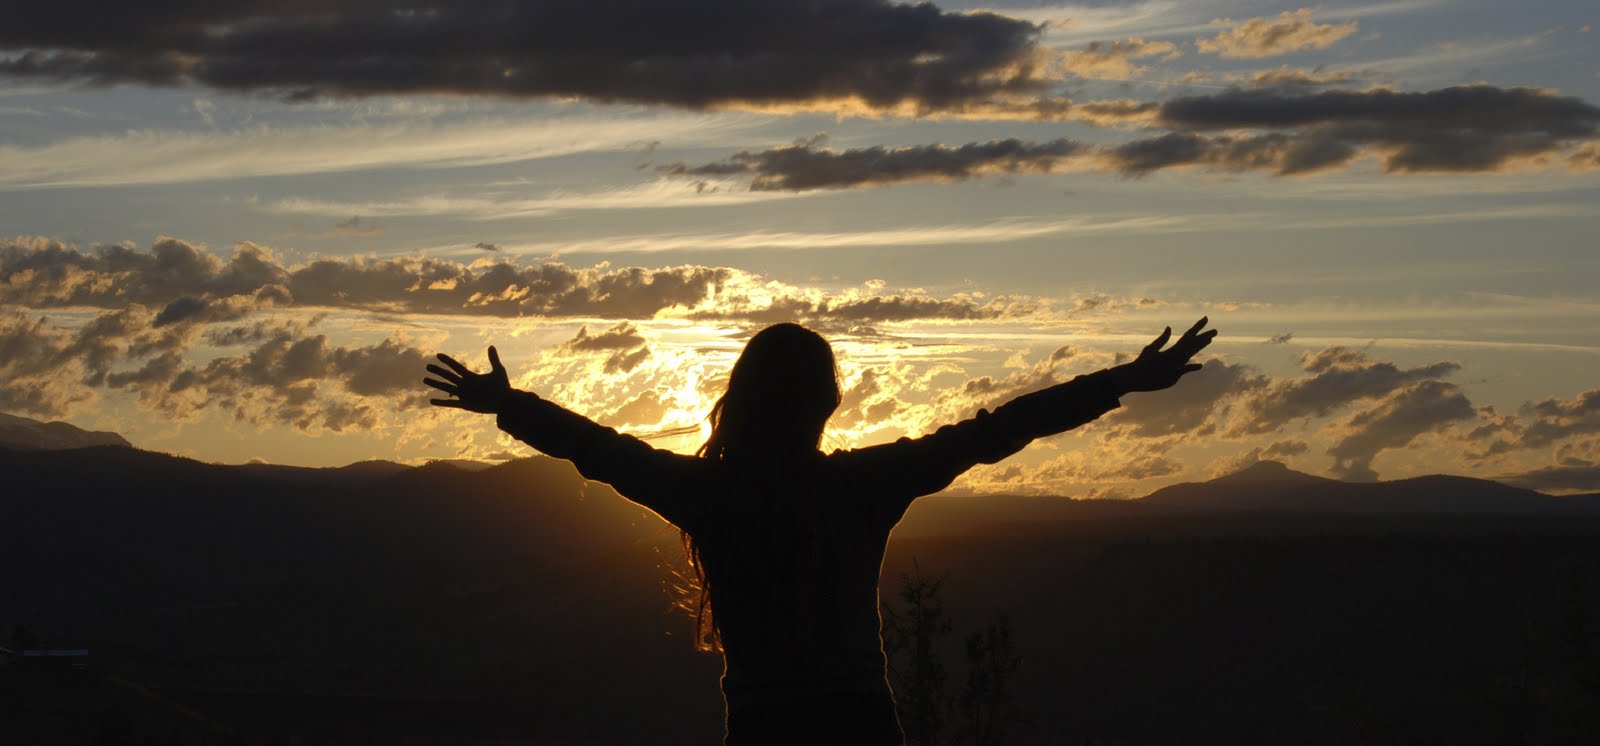 Fotografía de una dama de espaldas con sus brazos extendidos frente al sol que se pone sobre montañas ilustra el tema Ateos en el Edén en editoriallapaz.org.